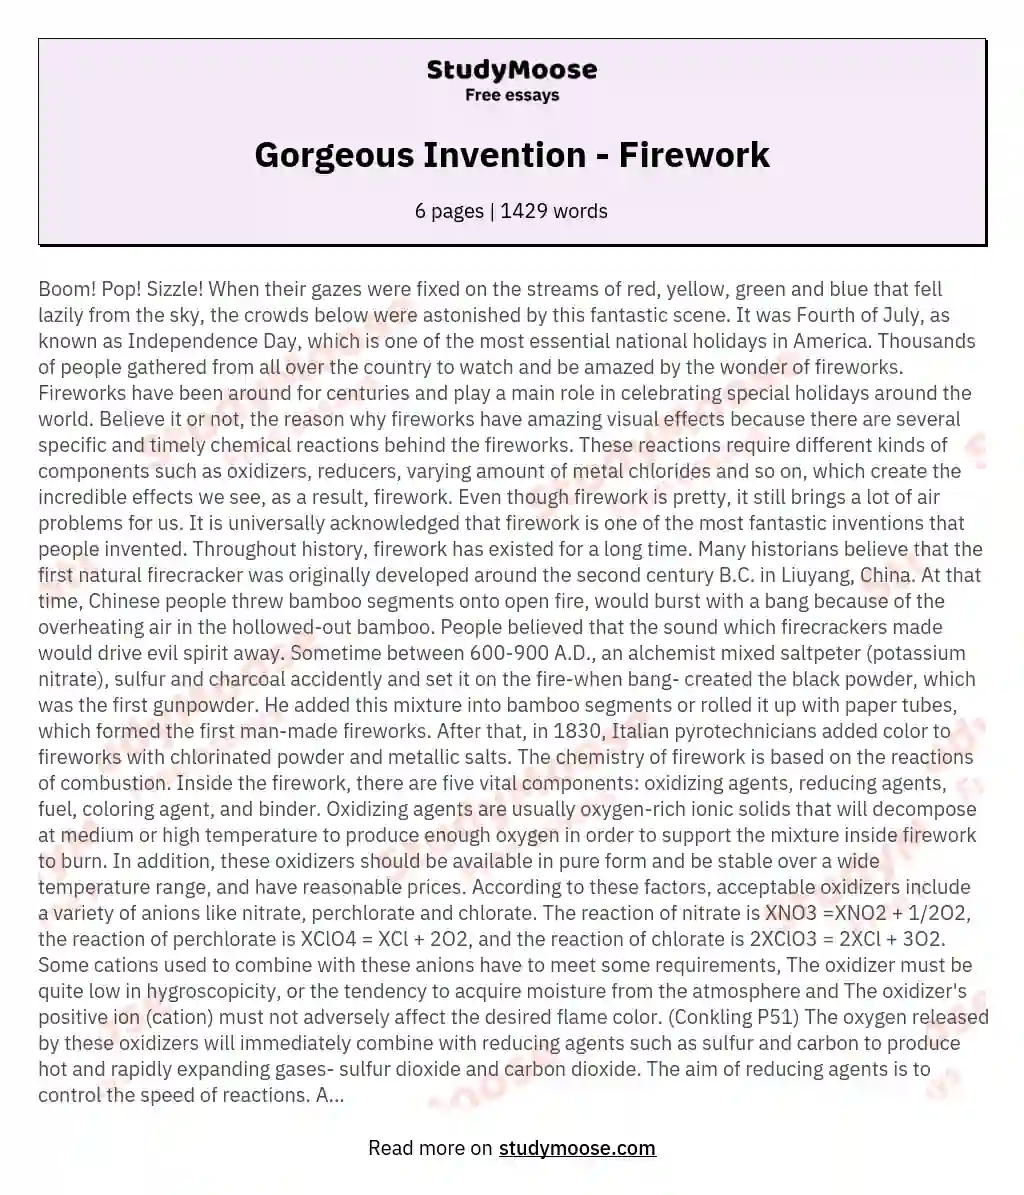 Gorgeous Invention - Firework essay